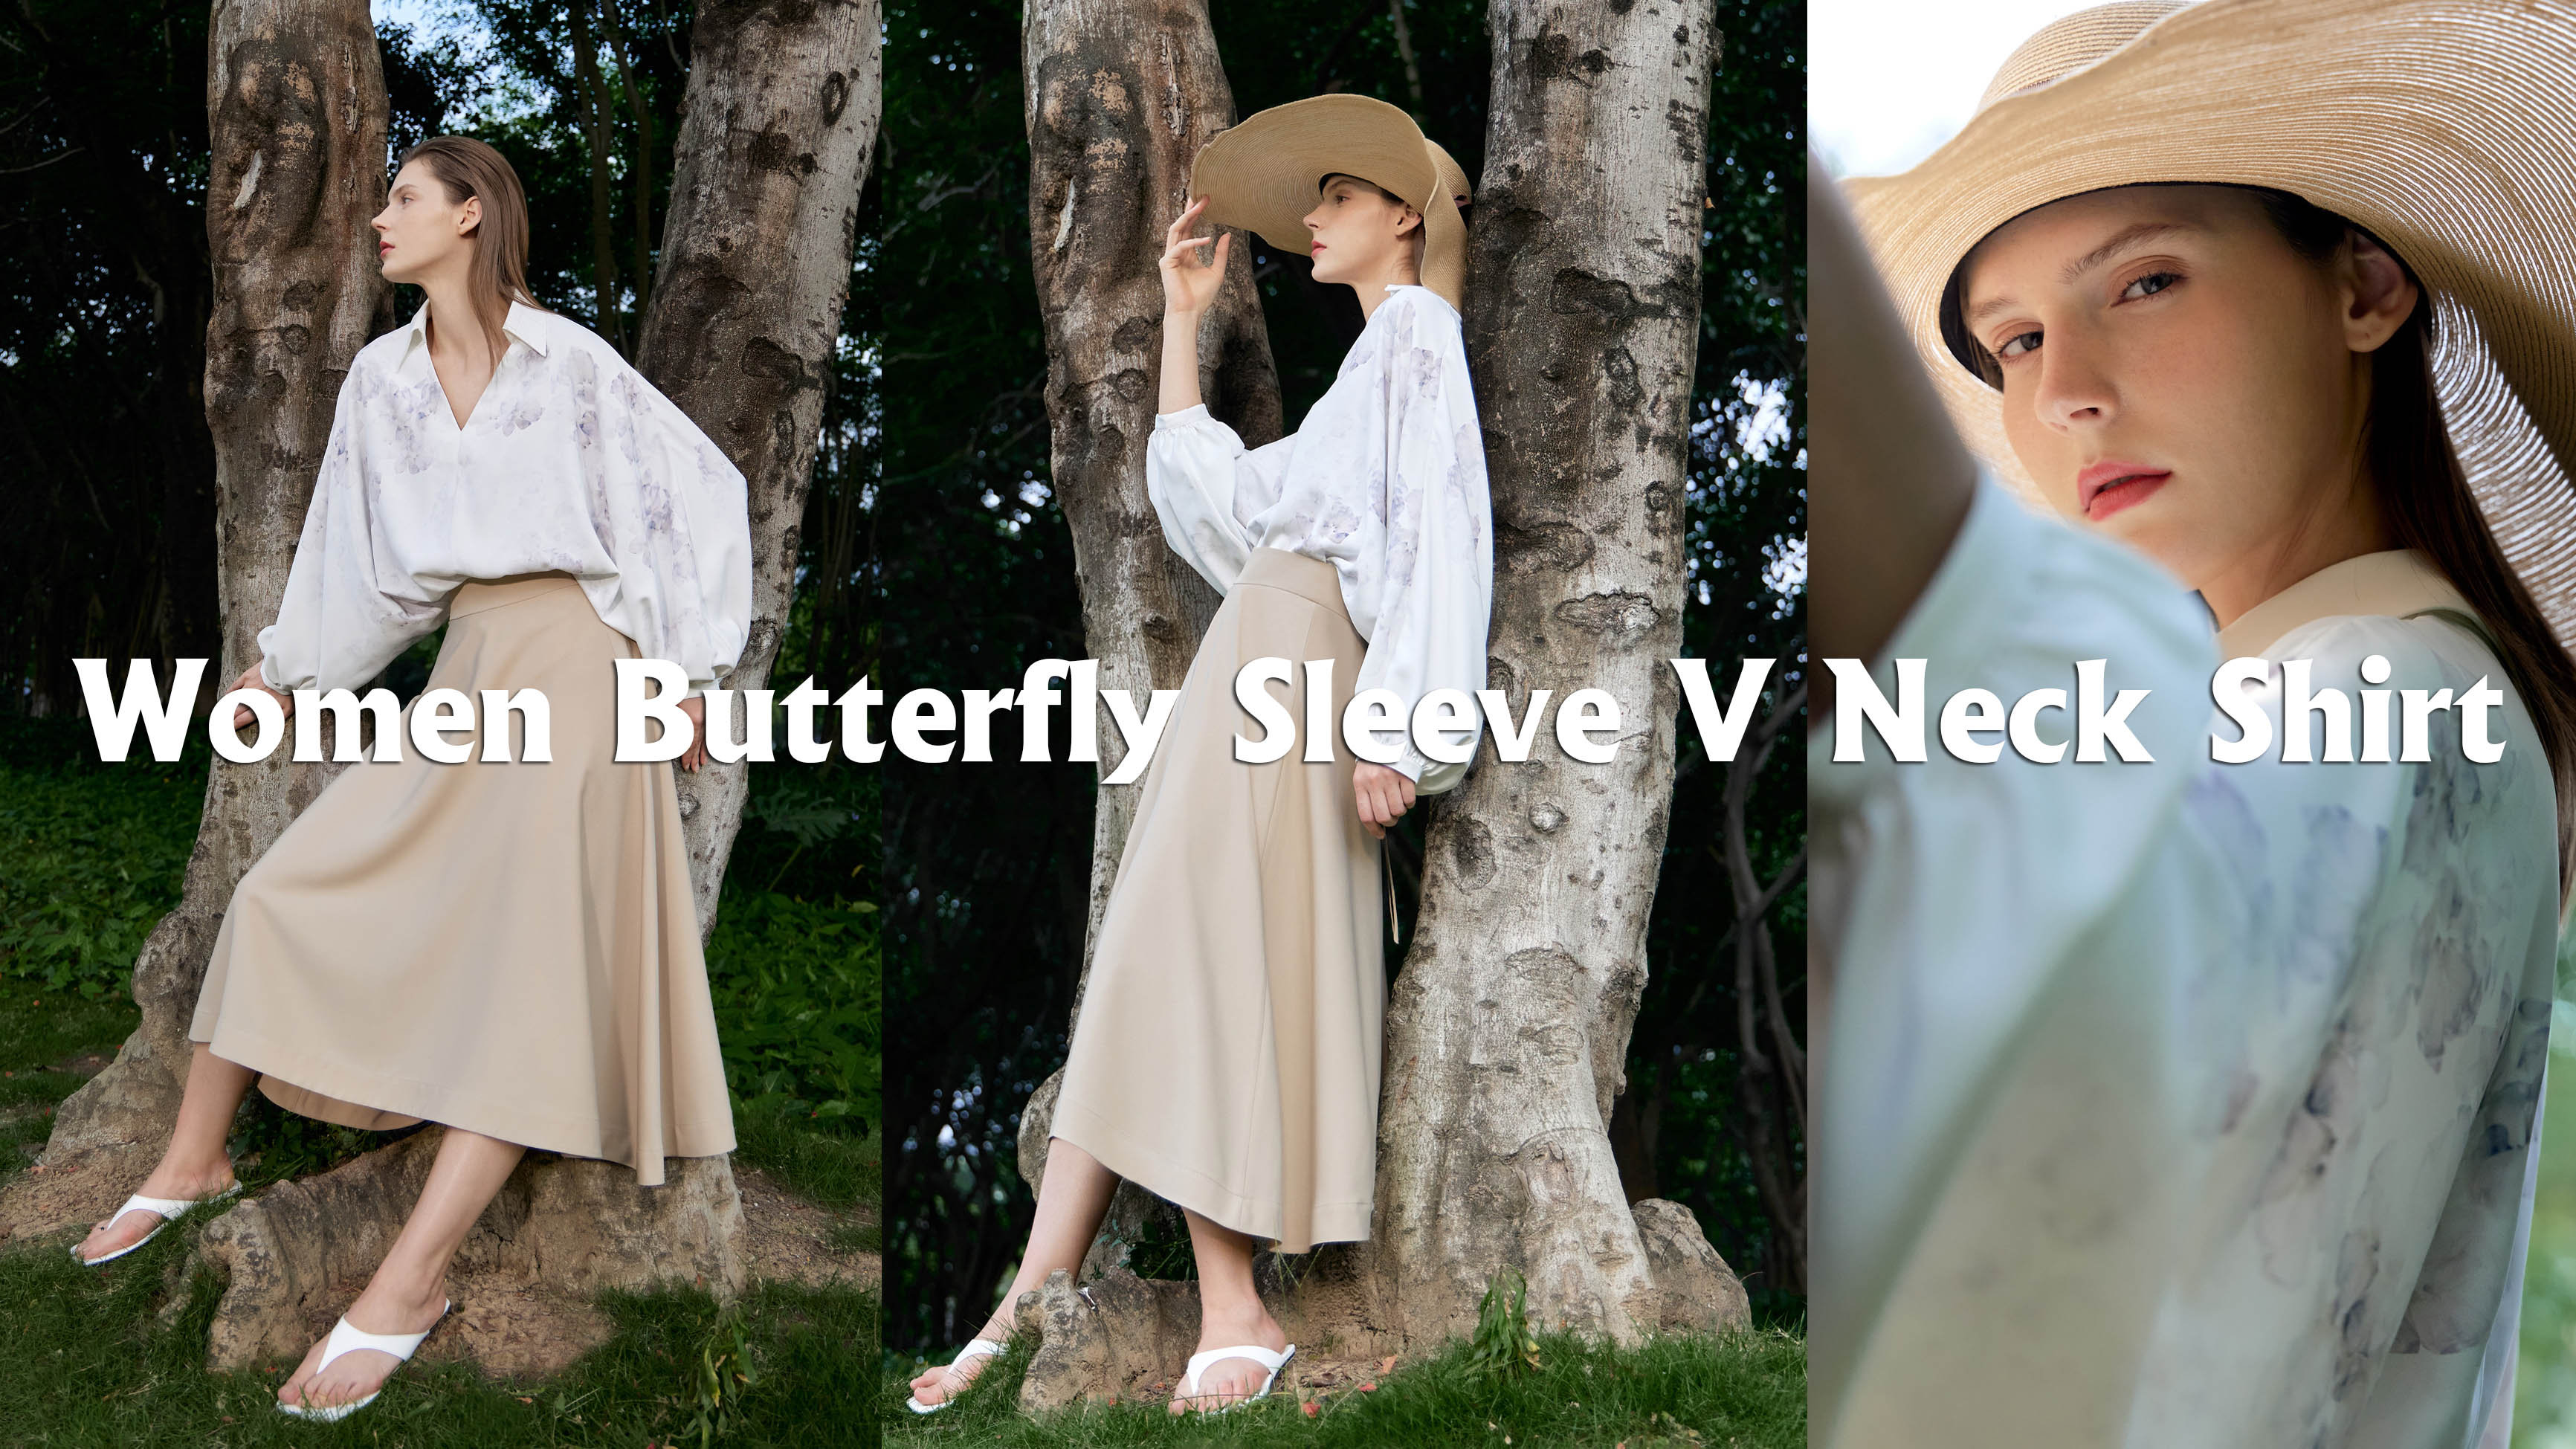 Women Butterfly Sleeve V Neck Shirt Products | Auschalink